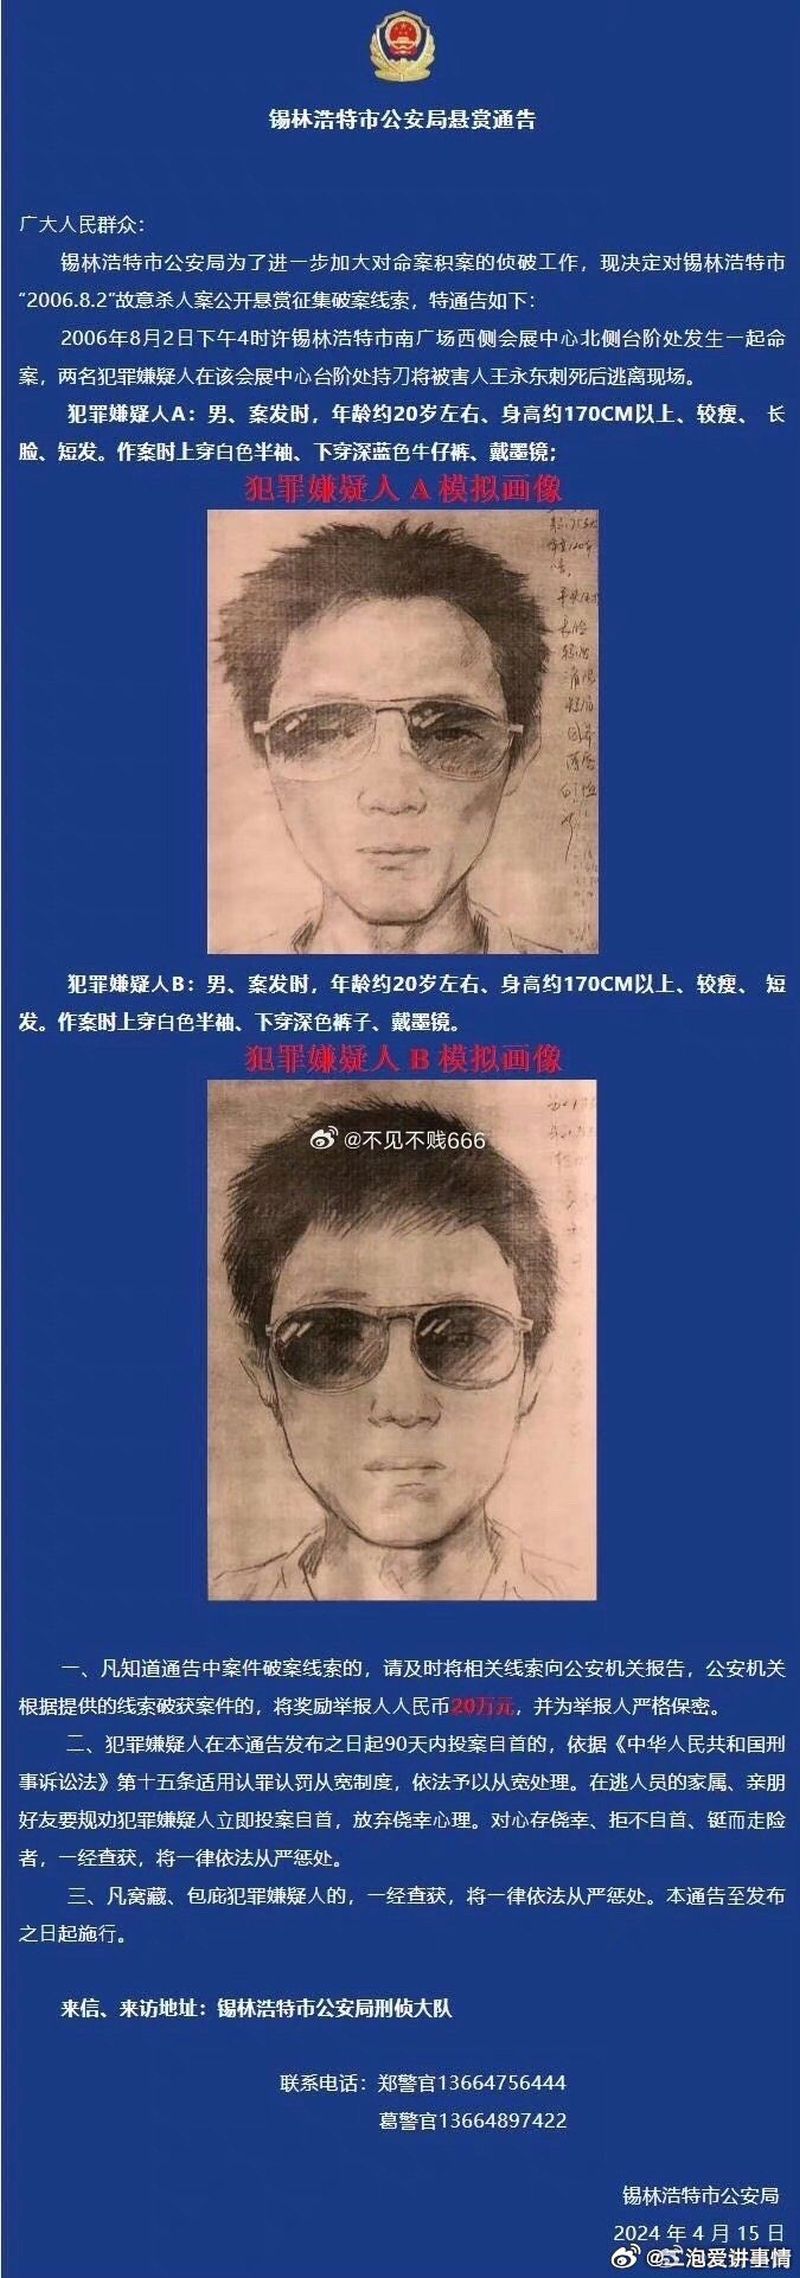 内蒙古锡林浩特市公安局通告中，一张命案逃犯模拟画像被指像极了一名网红。